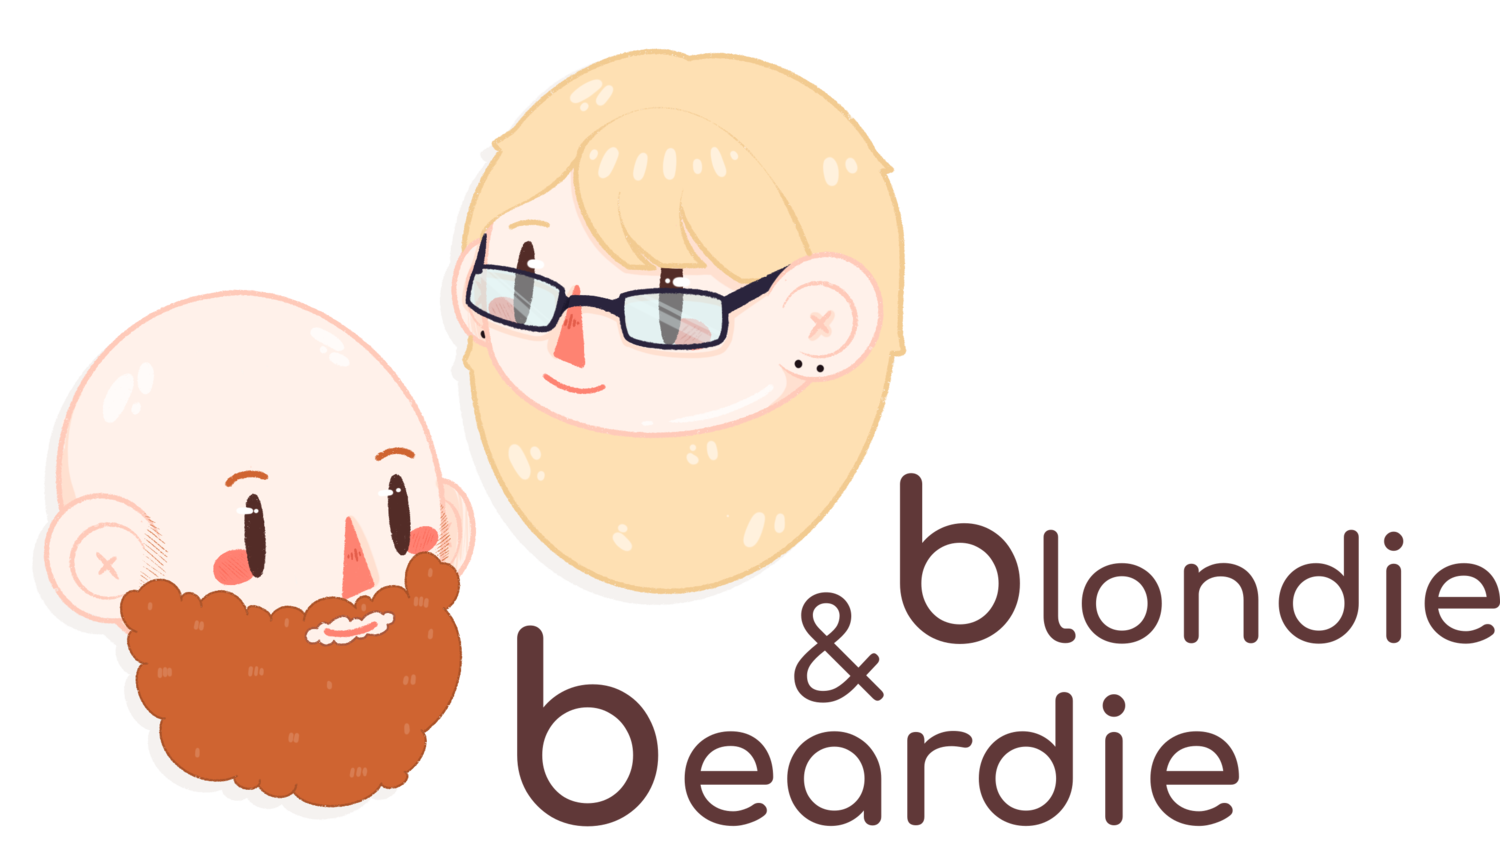 Beardie and Blondie